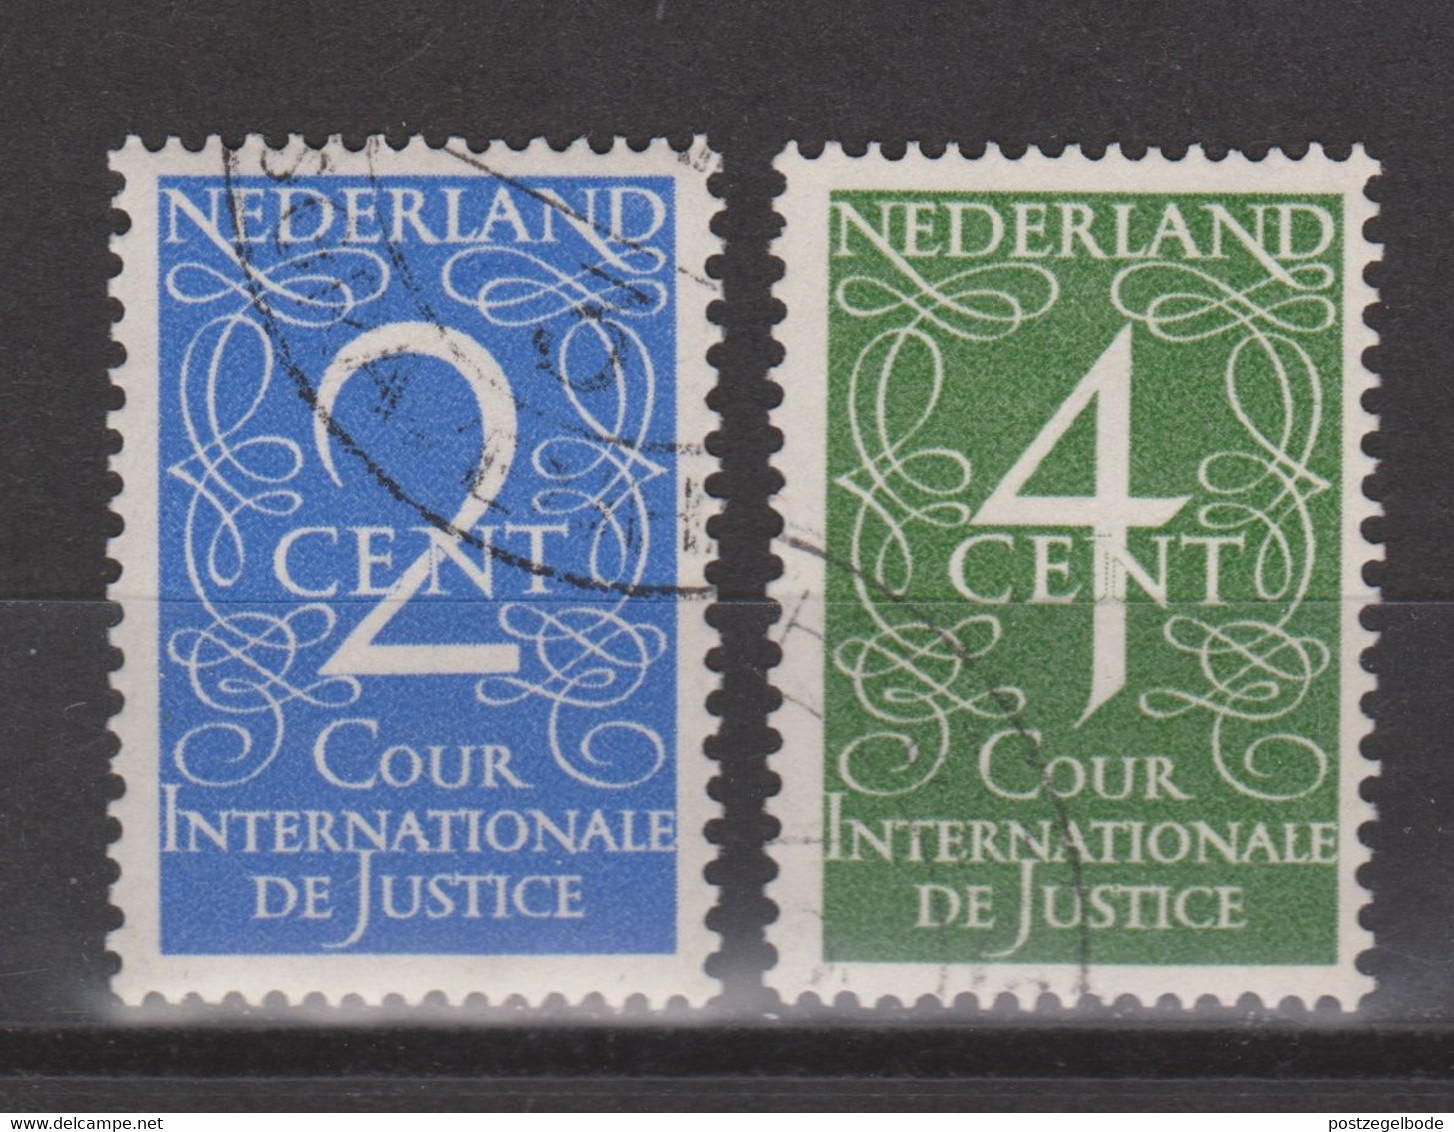 NVPH Nederland Netherlands Pays Bas Niederlande Holanda 25-26 Used Dienst Zegel Service Stamp Timbre Cour Sello Oficio - Servizio